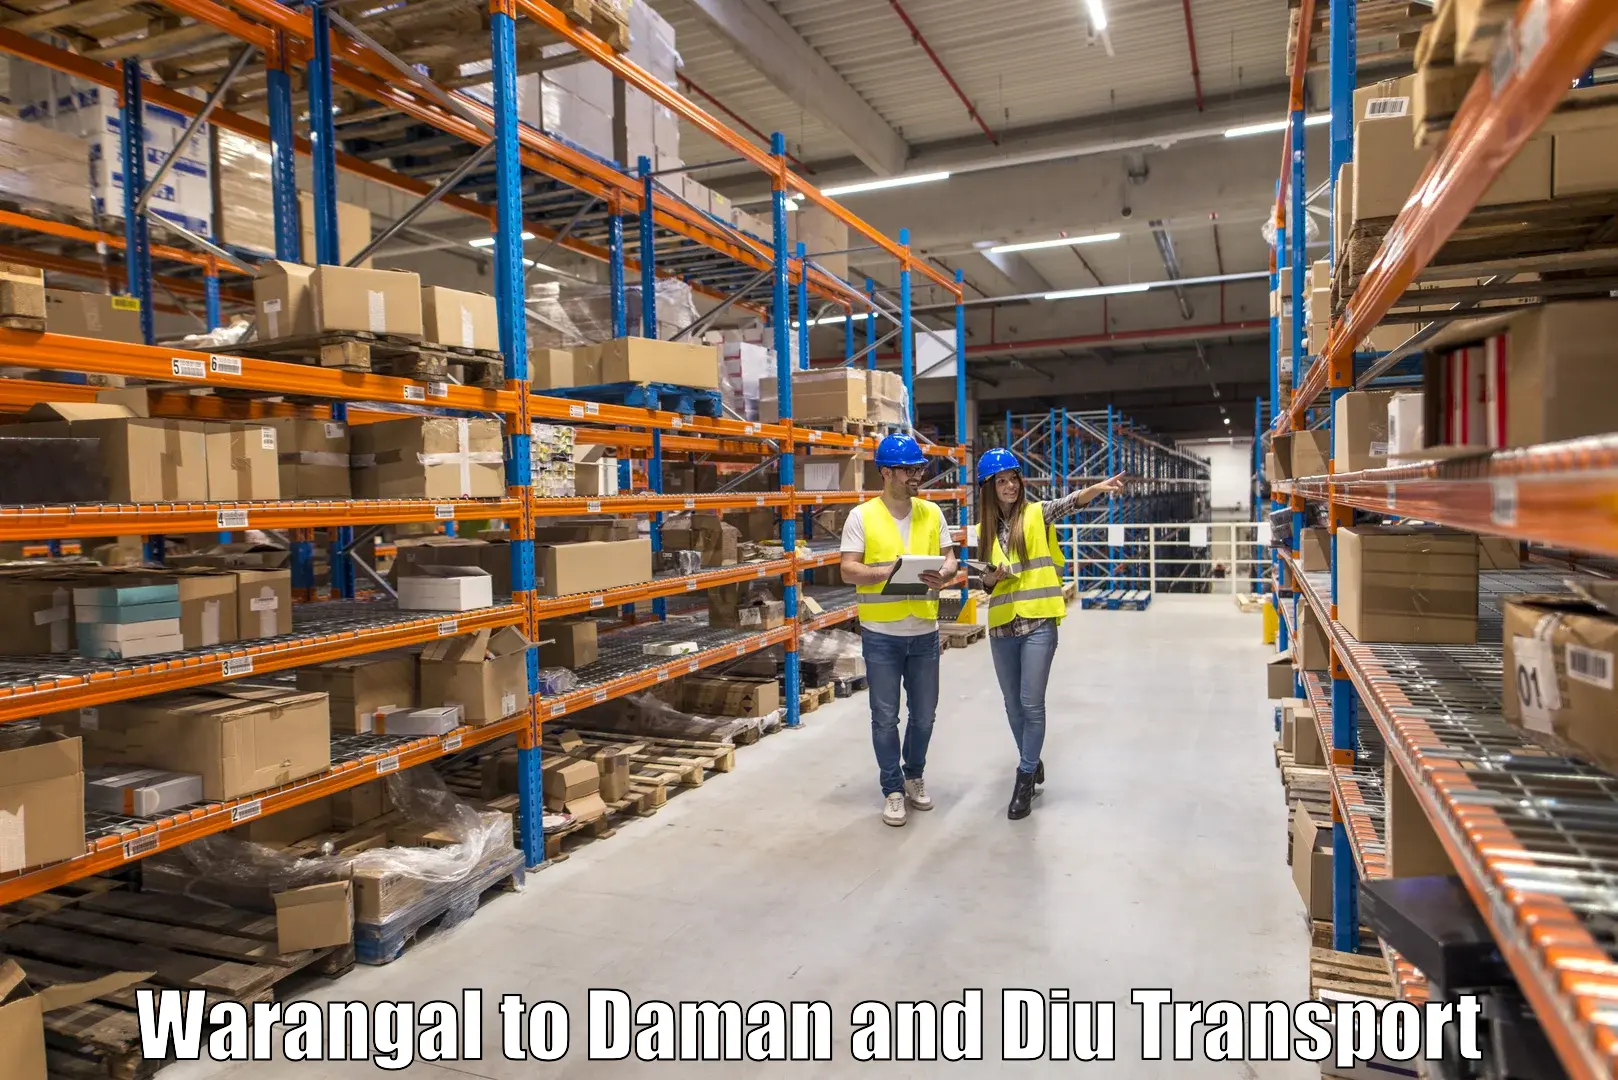 International cargo transportation services Warangal to Daman and Diu